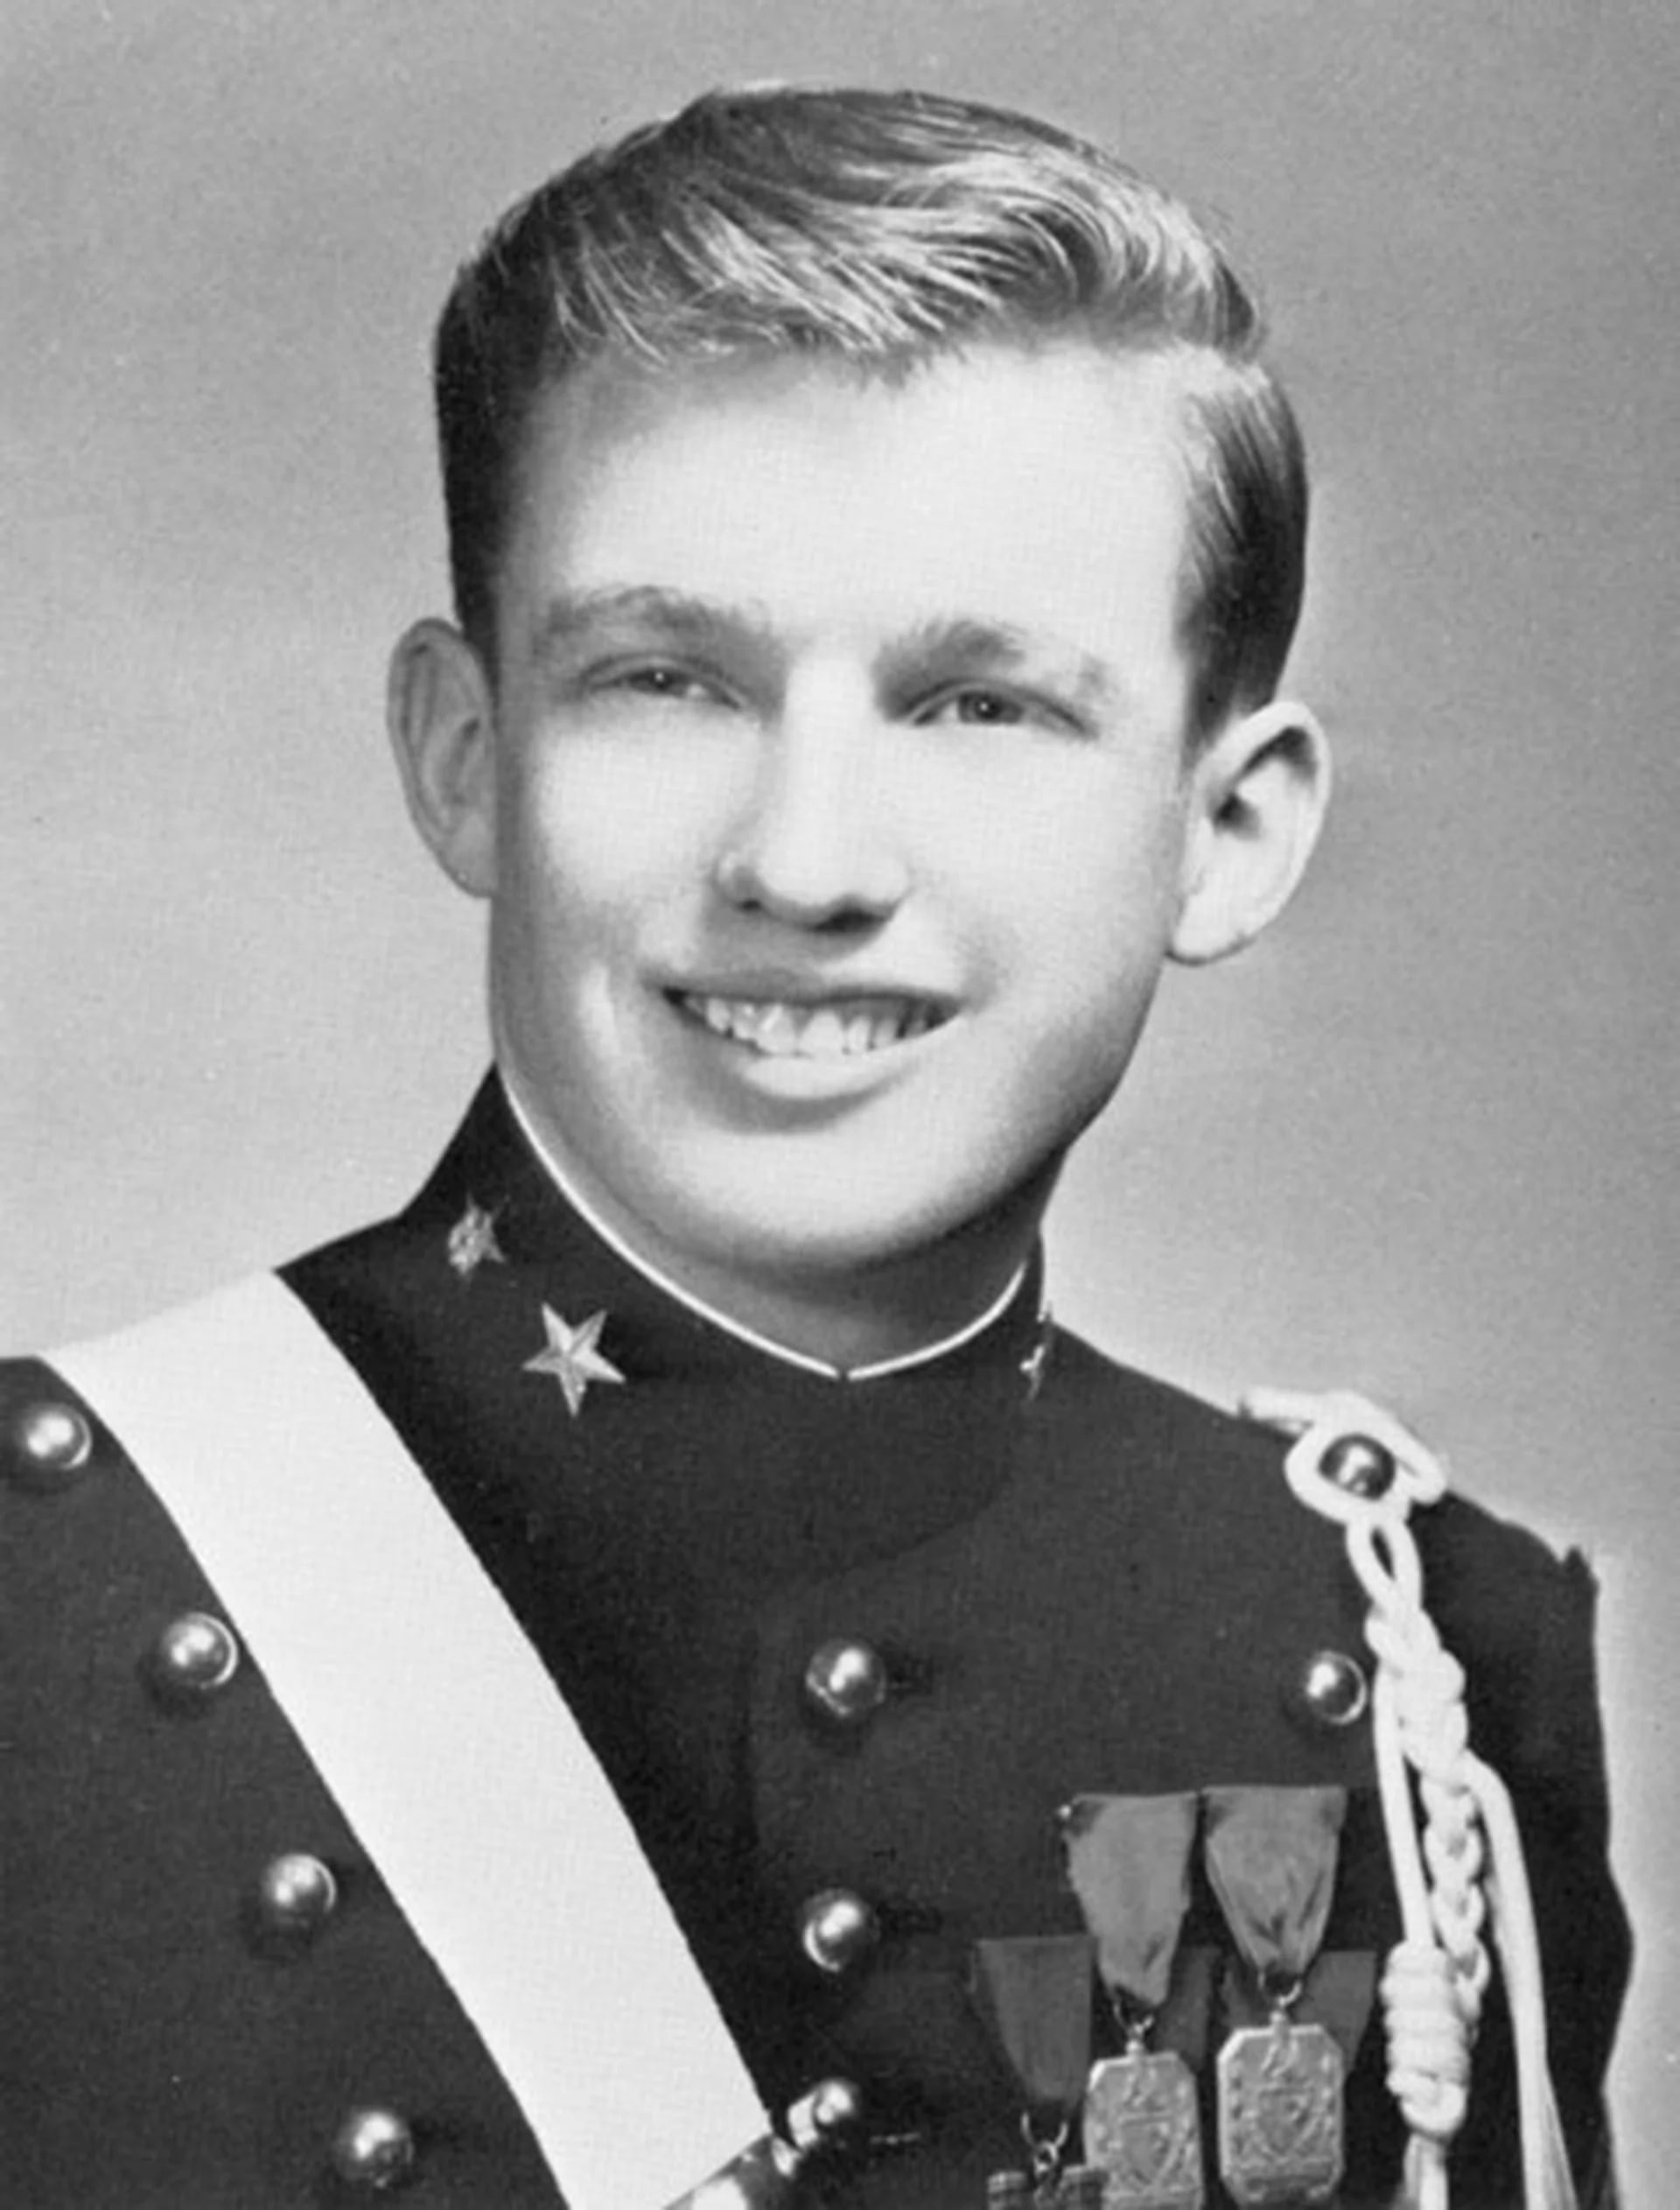 Donald Trump en 1964, durante su formación en la New York Military Academy. El uniforme sería dejado de lado cuando debió ir a Vietnam